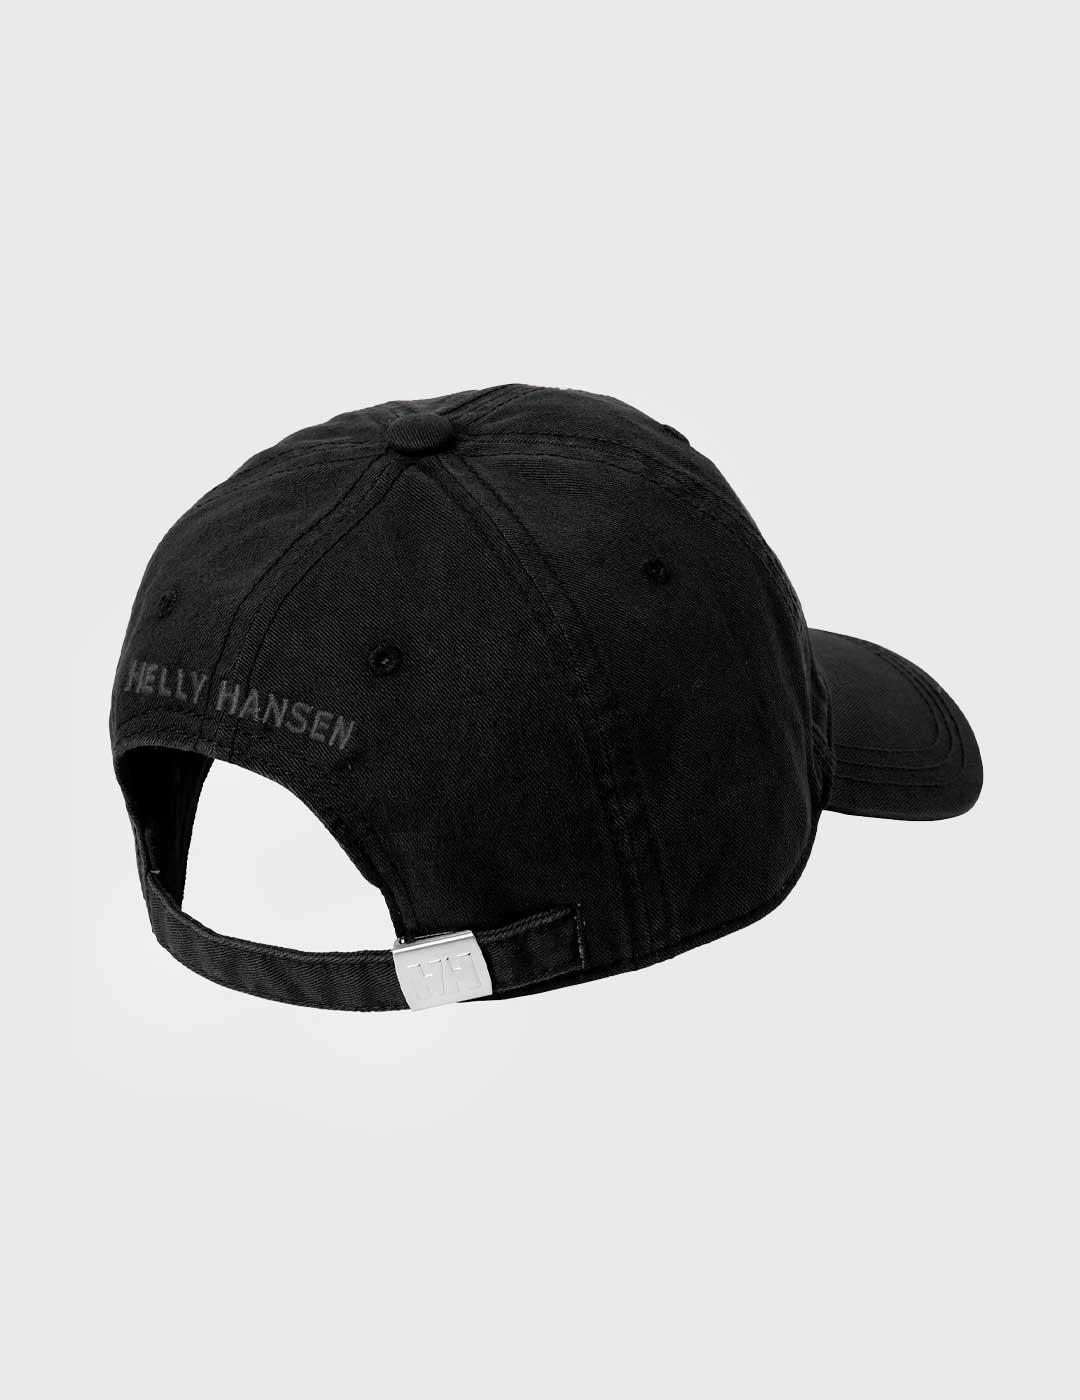 Gorra Helly Hansen Logo Cap negra para hombre y mujer